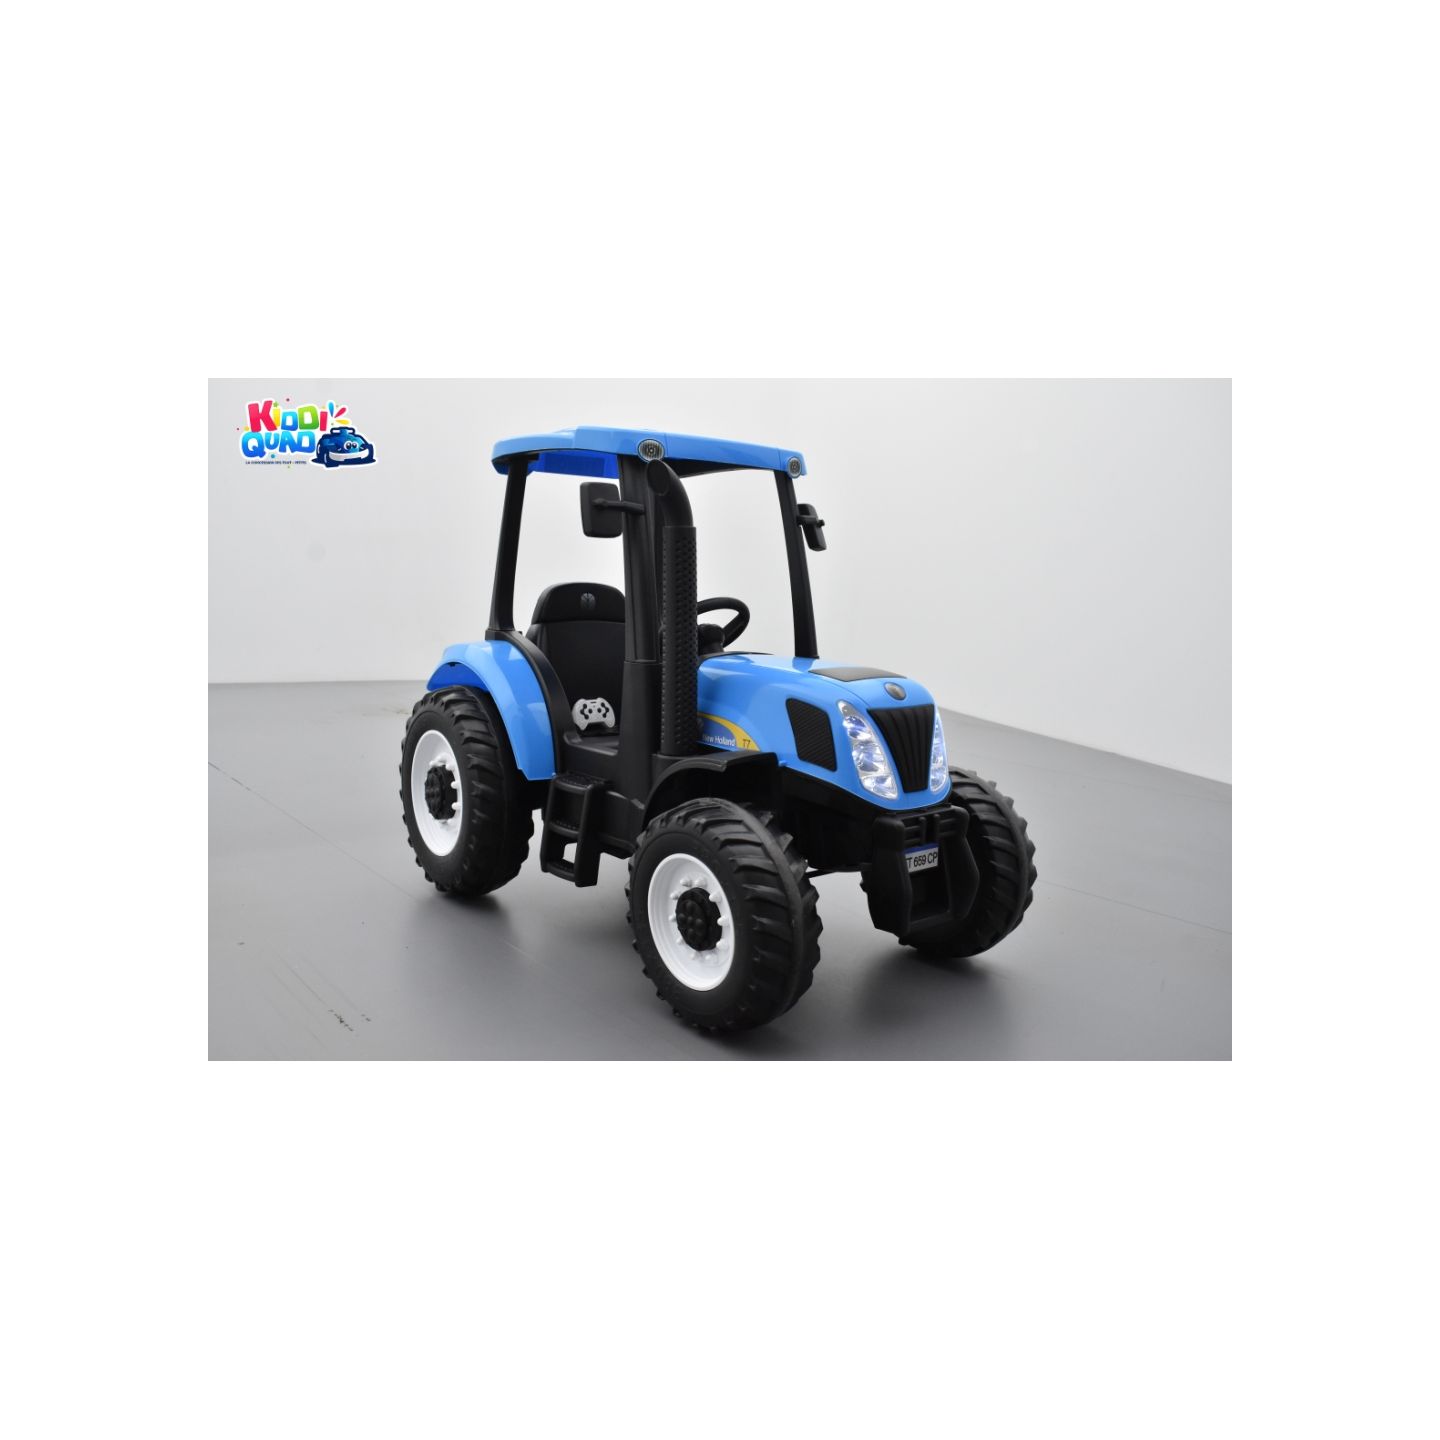 Tracteur New Holland Bleu, véhicule électrique pour enfant